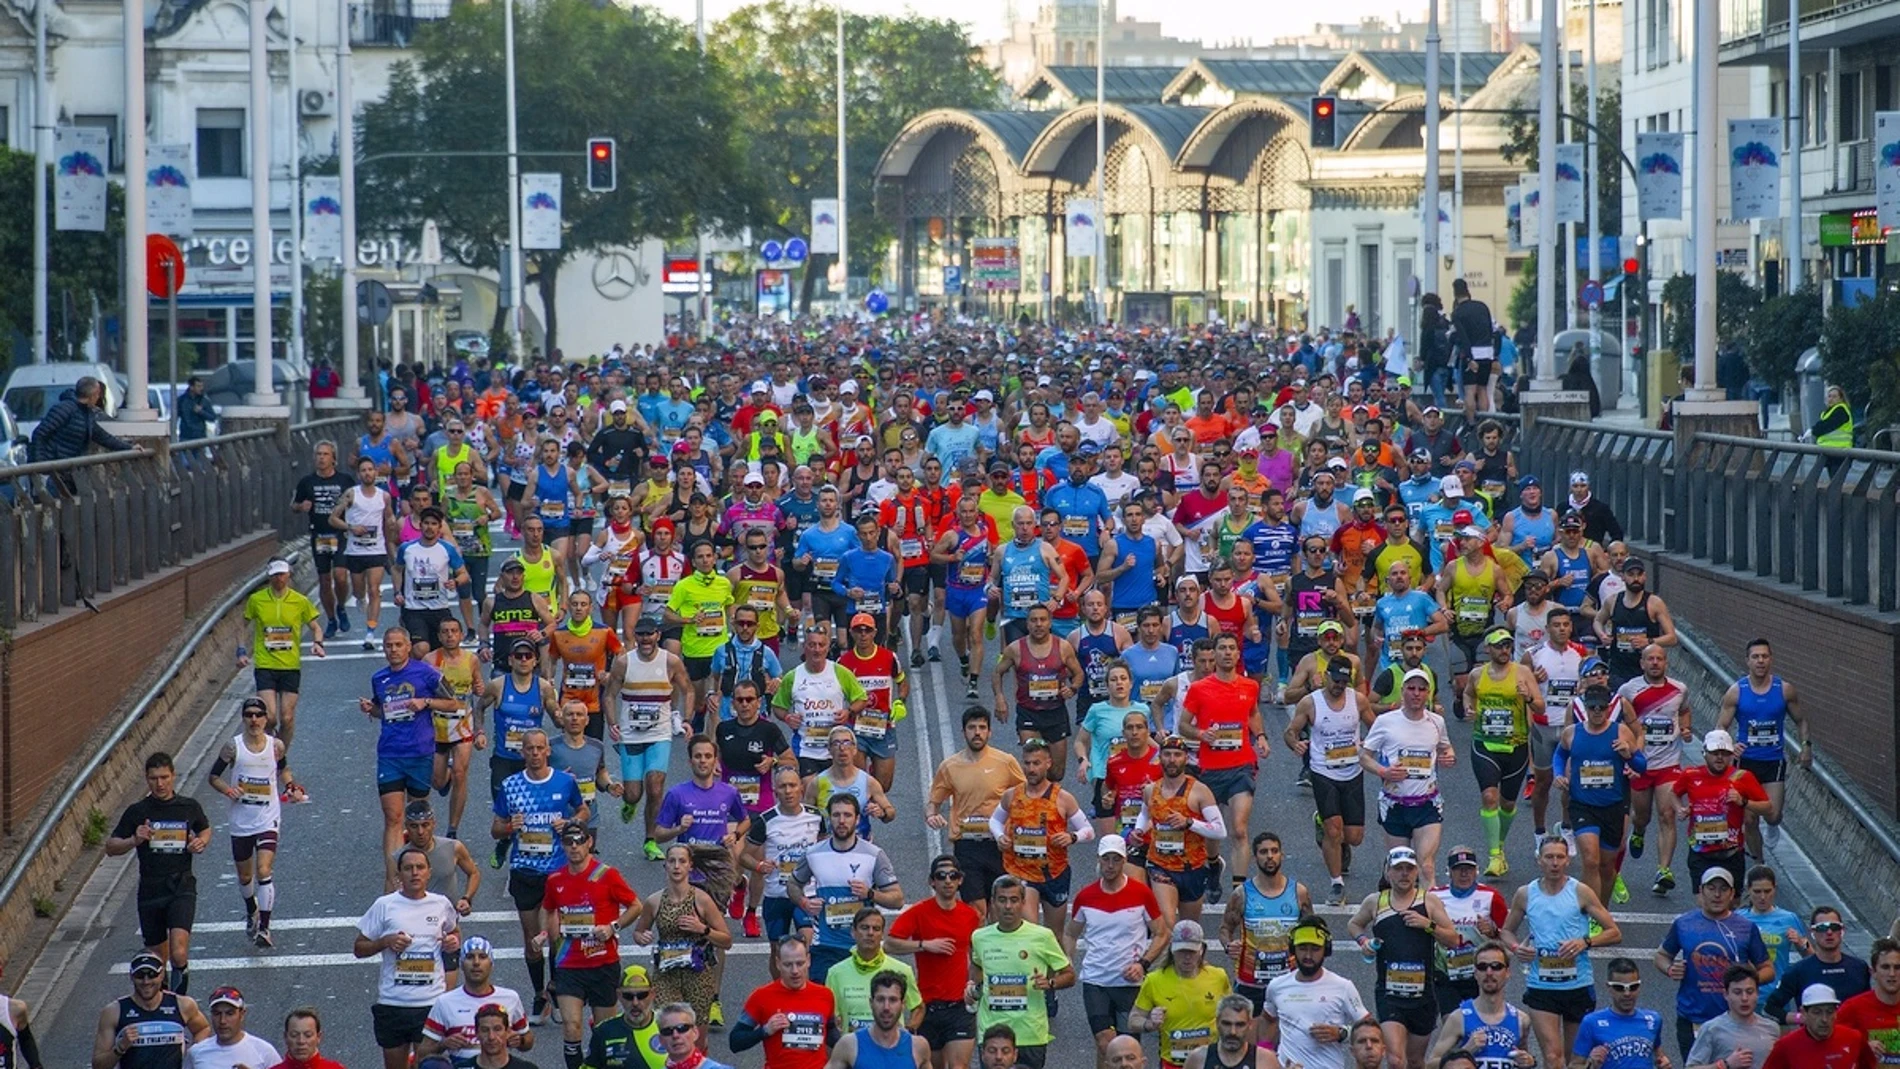 Sevilla.-Entrega de premios del Maratón, destacando la participación de atletas sevillanos y andaluces